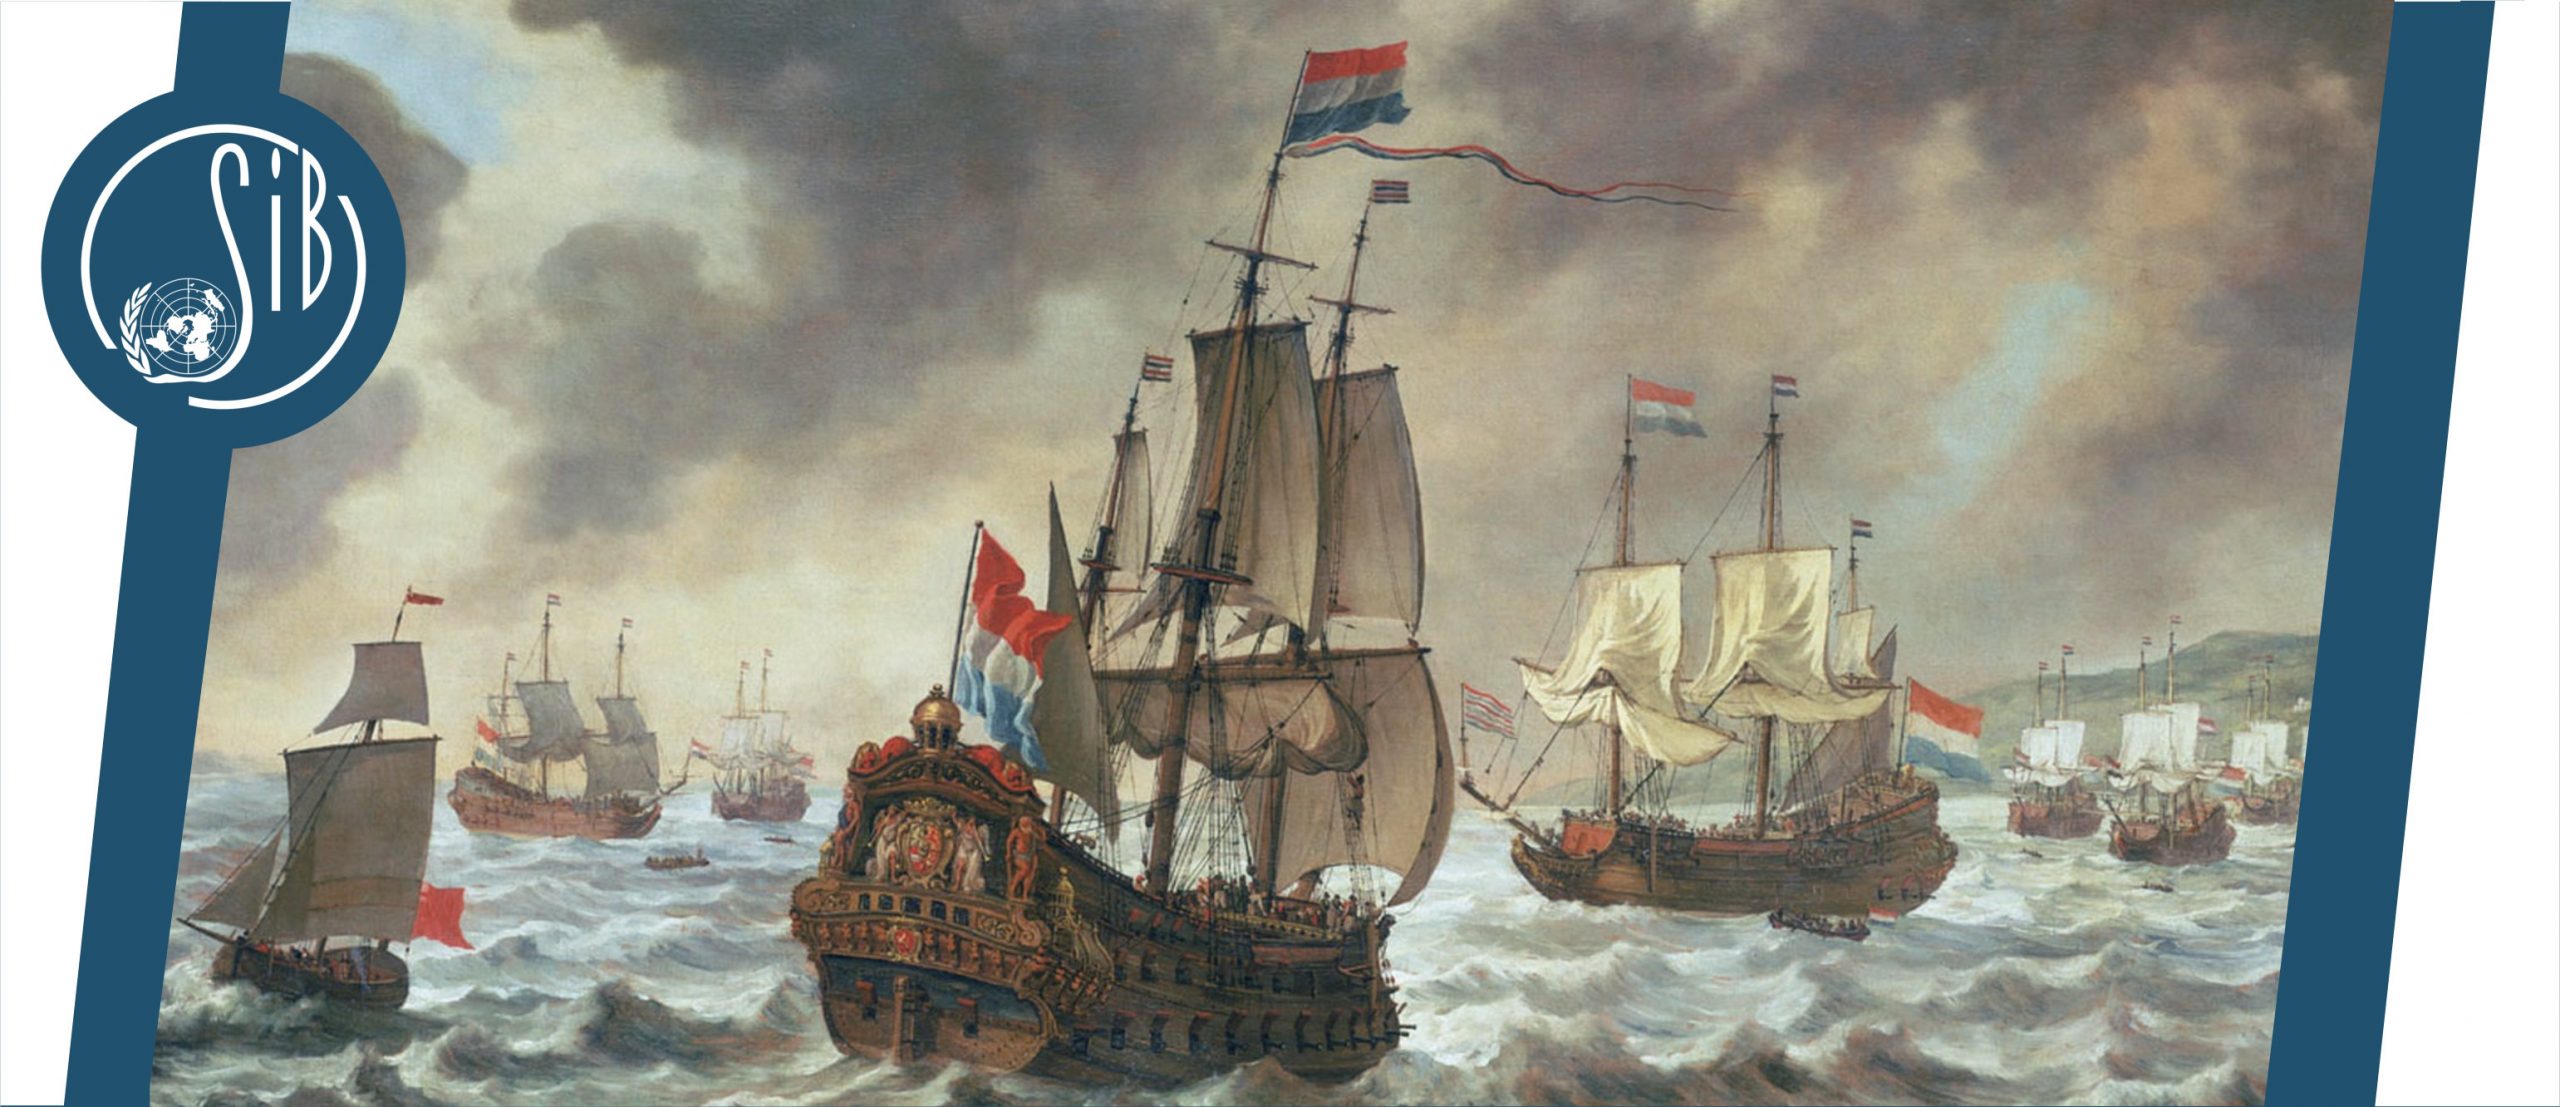 Dieslezing: het Gouden randje van de Nederlandse identiteit